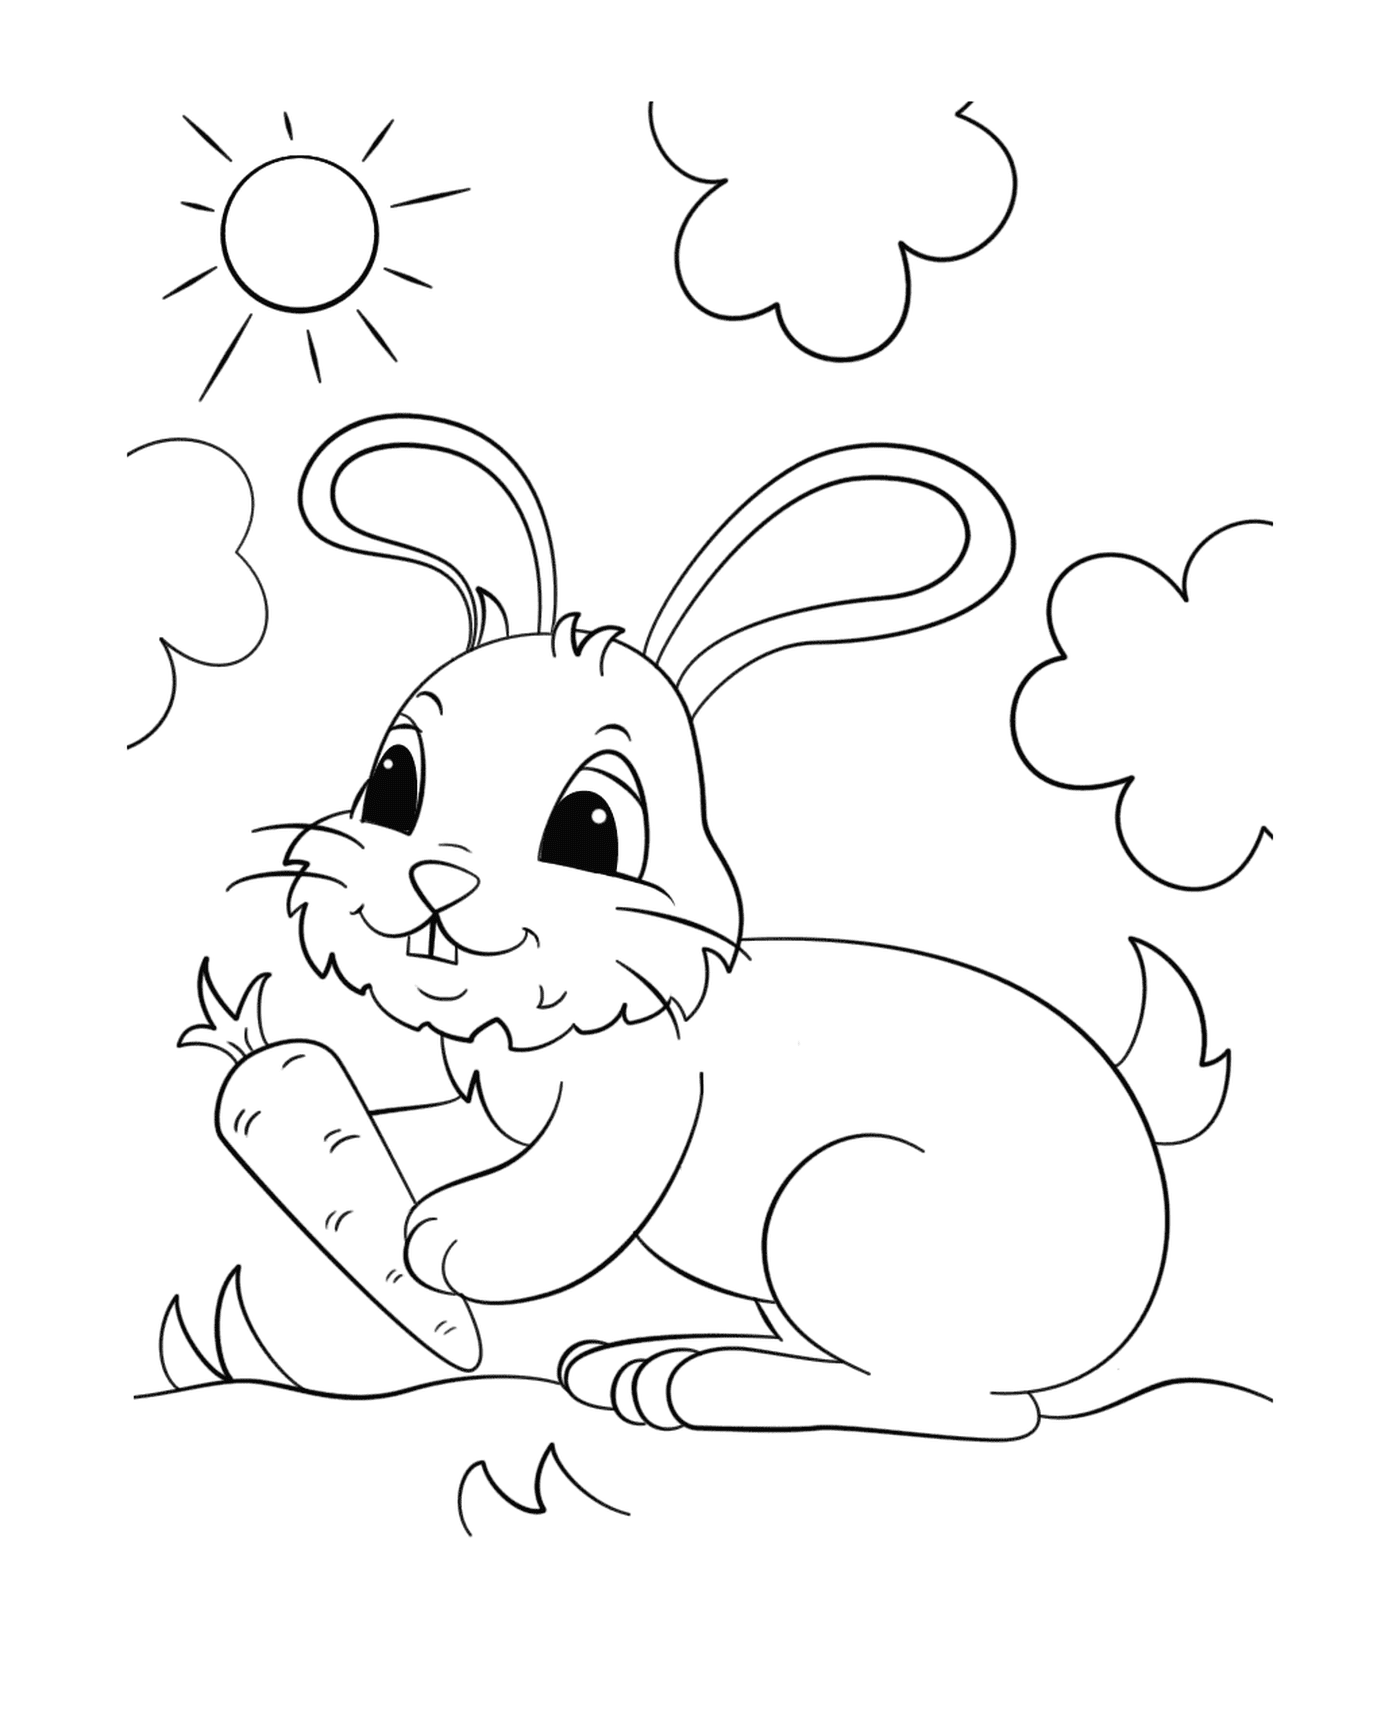  Coelho segurando uma cenoura sob o sol 